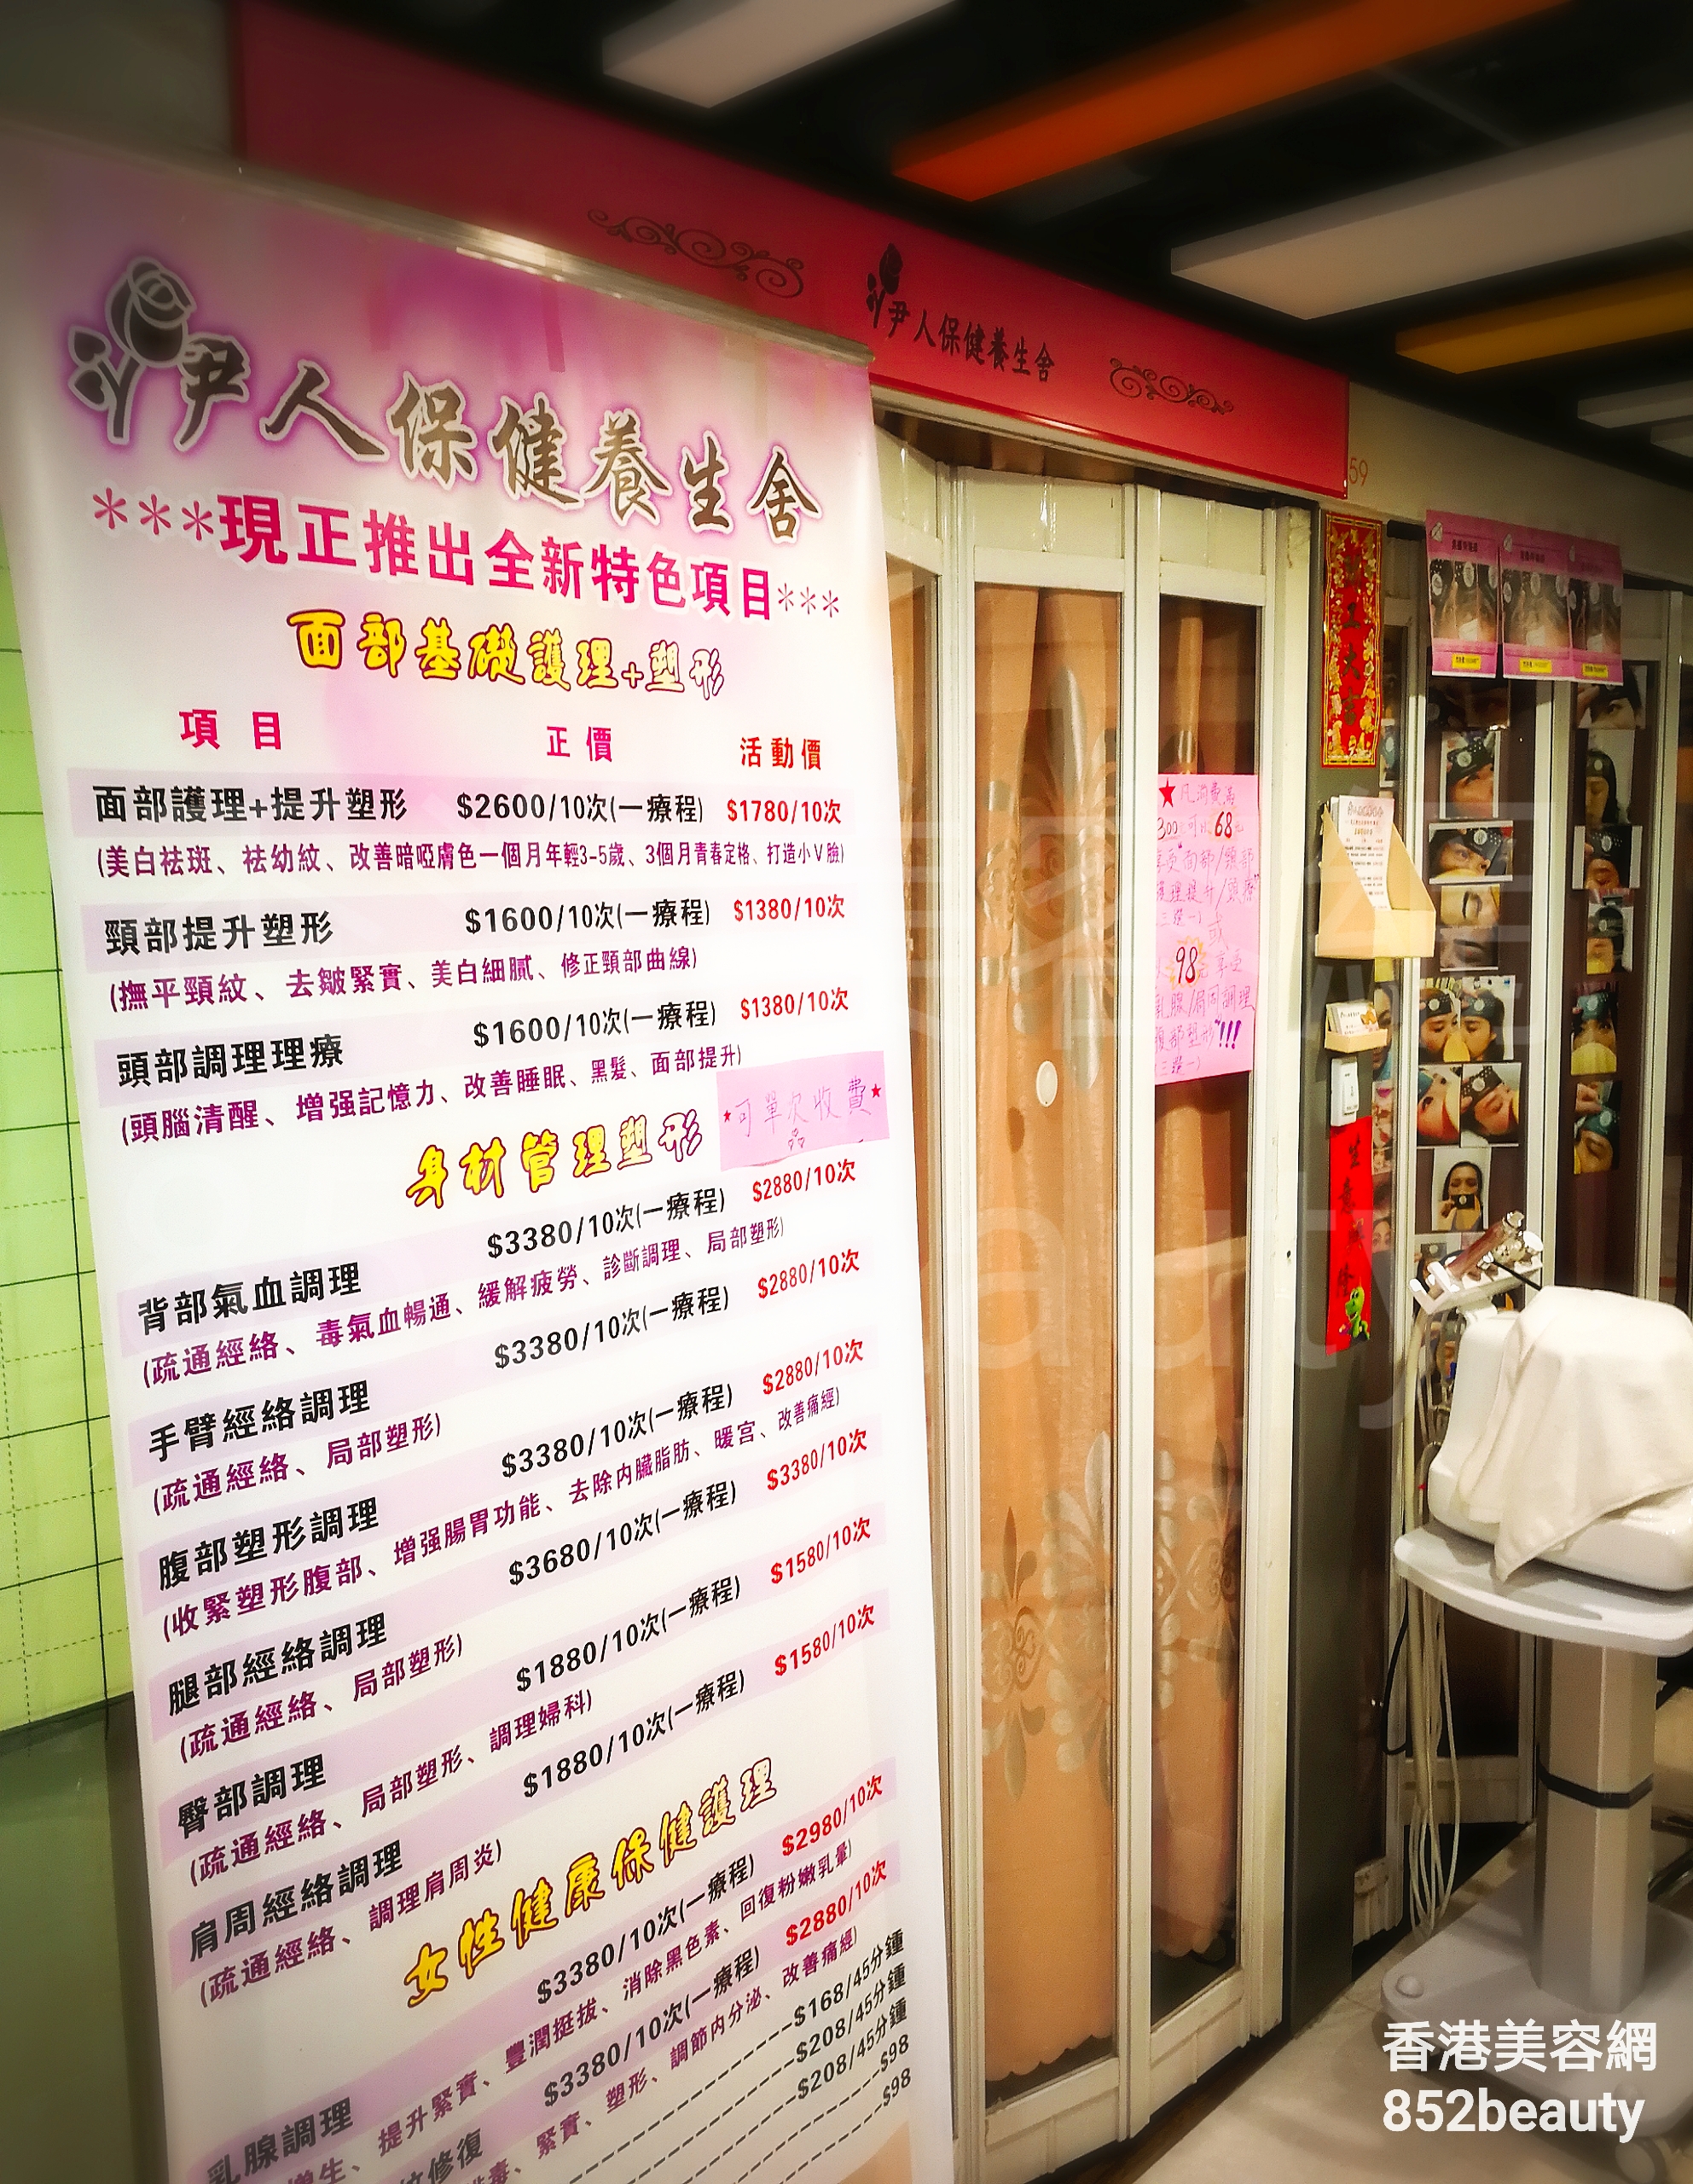 香港美容網 Hong Kong Beauty Salon 美容院 / 美容師: 伊人保健養生舍